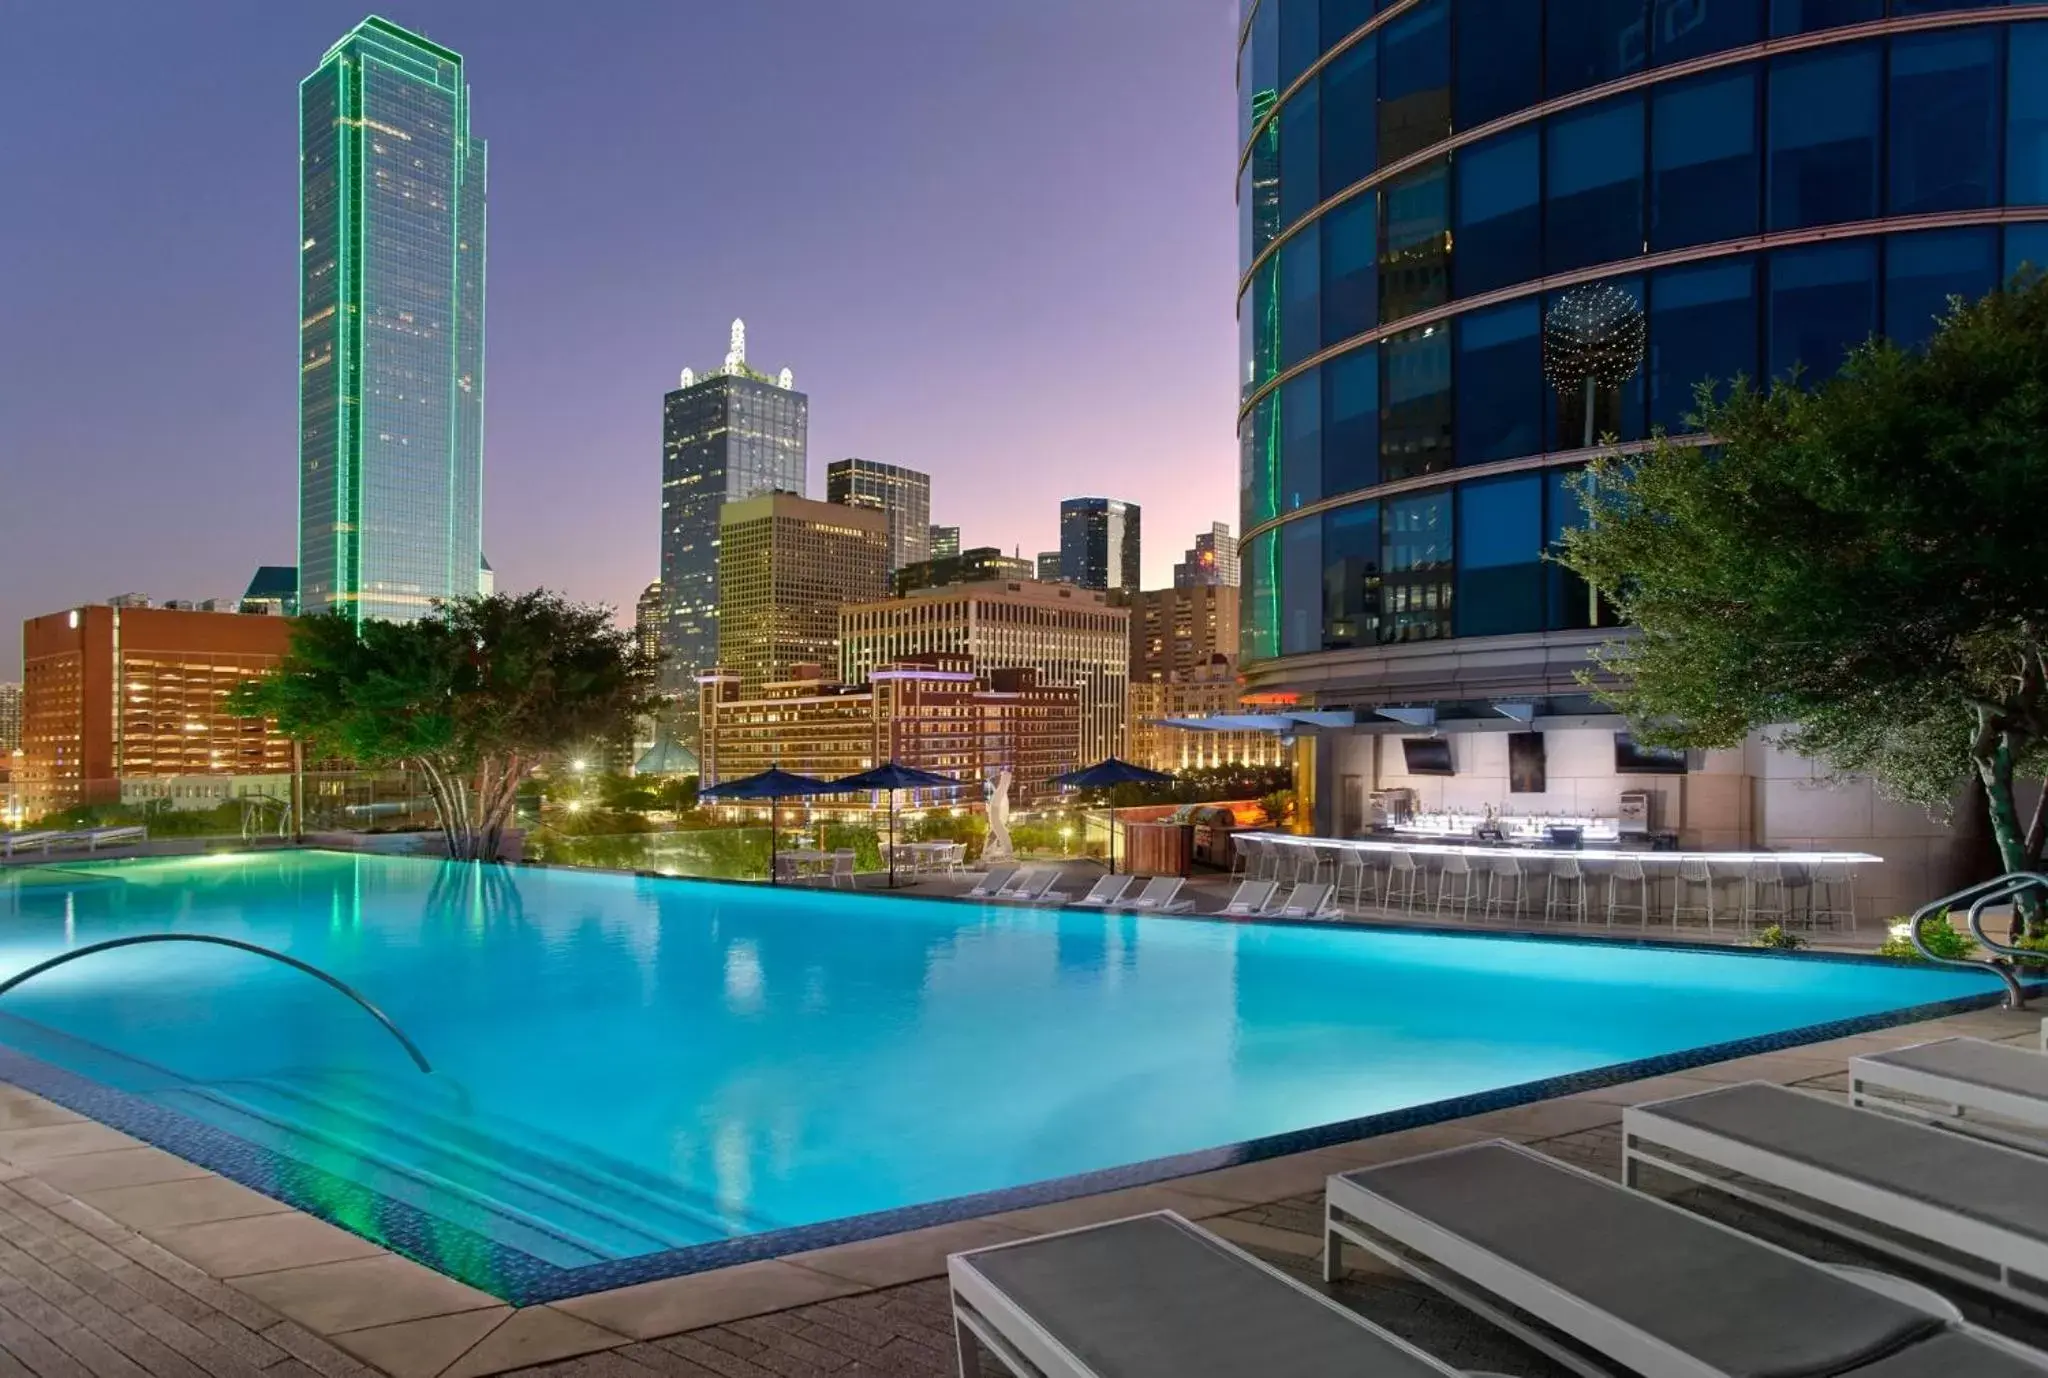 Swimming Pool in Omni Dallas Hotel